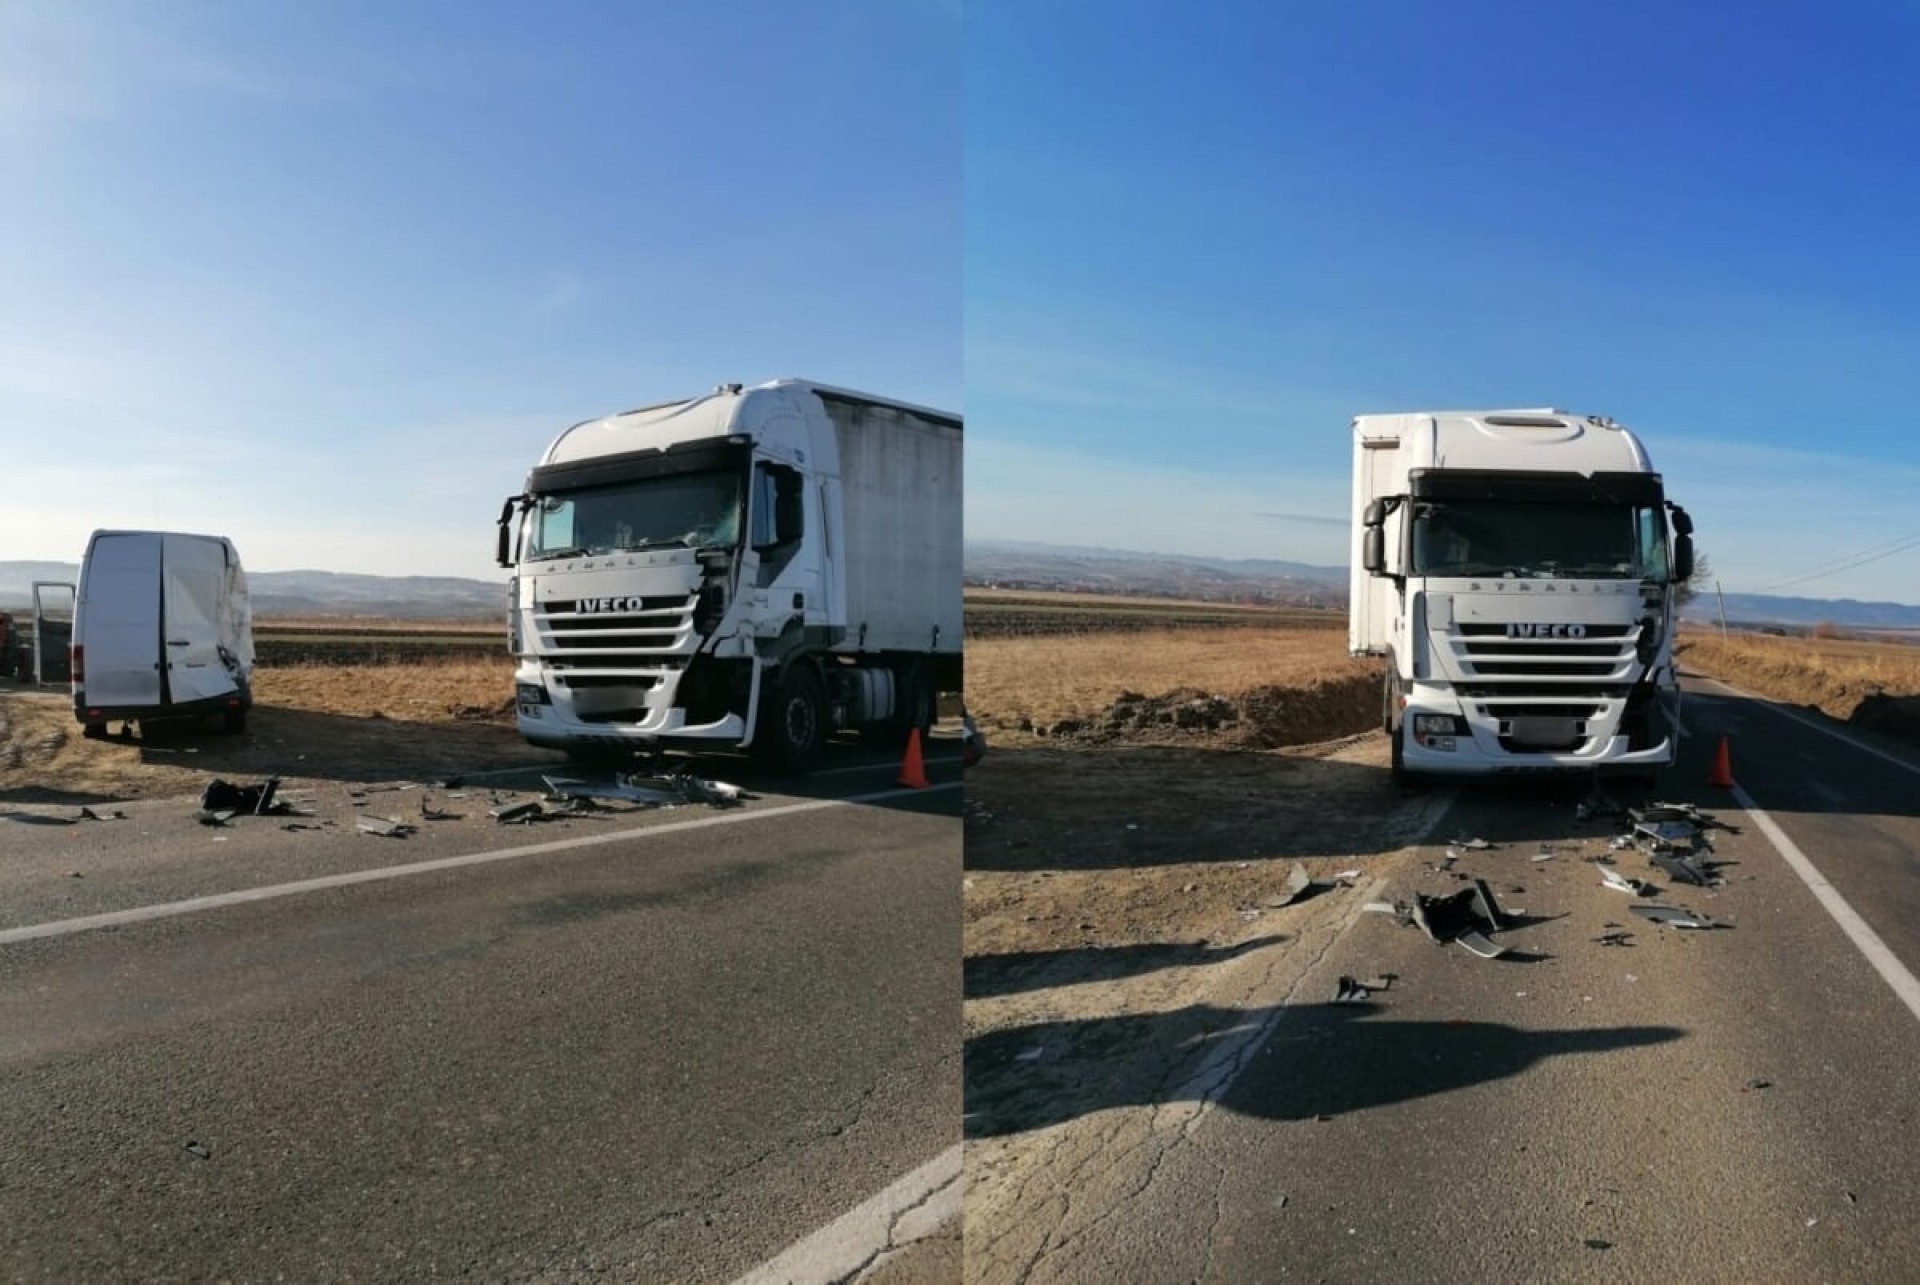 Un șofer de camion nu a încetinit și a lovit o utilitară care executa un viraj